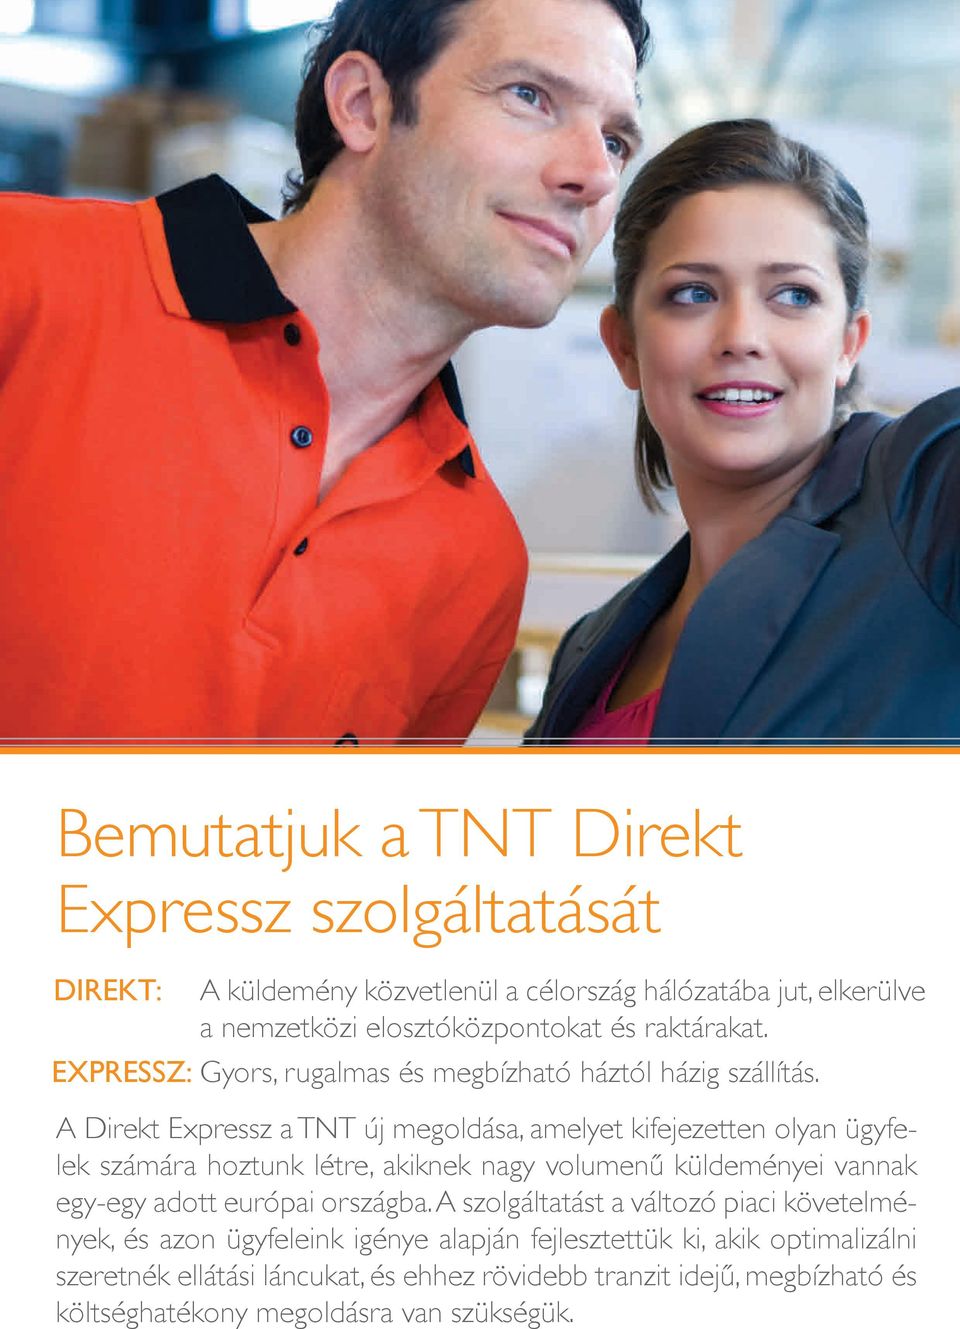 A Direkt Expressz a TNT új megoldása, amelyet kifejezetten olyan ügyfelek számára hoztunk létre, akiknek nagy volumenű küldeményei vannak egy-egy adott